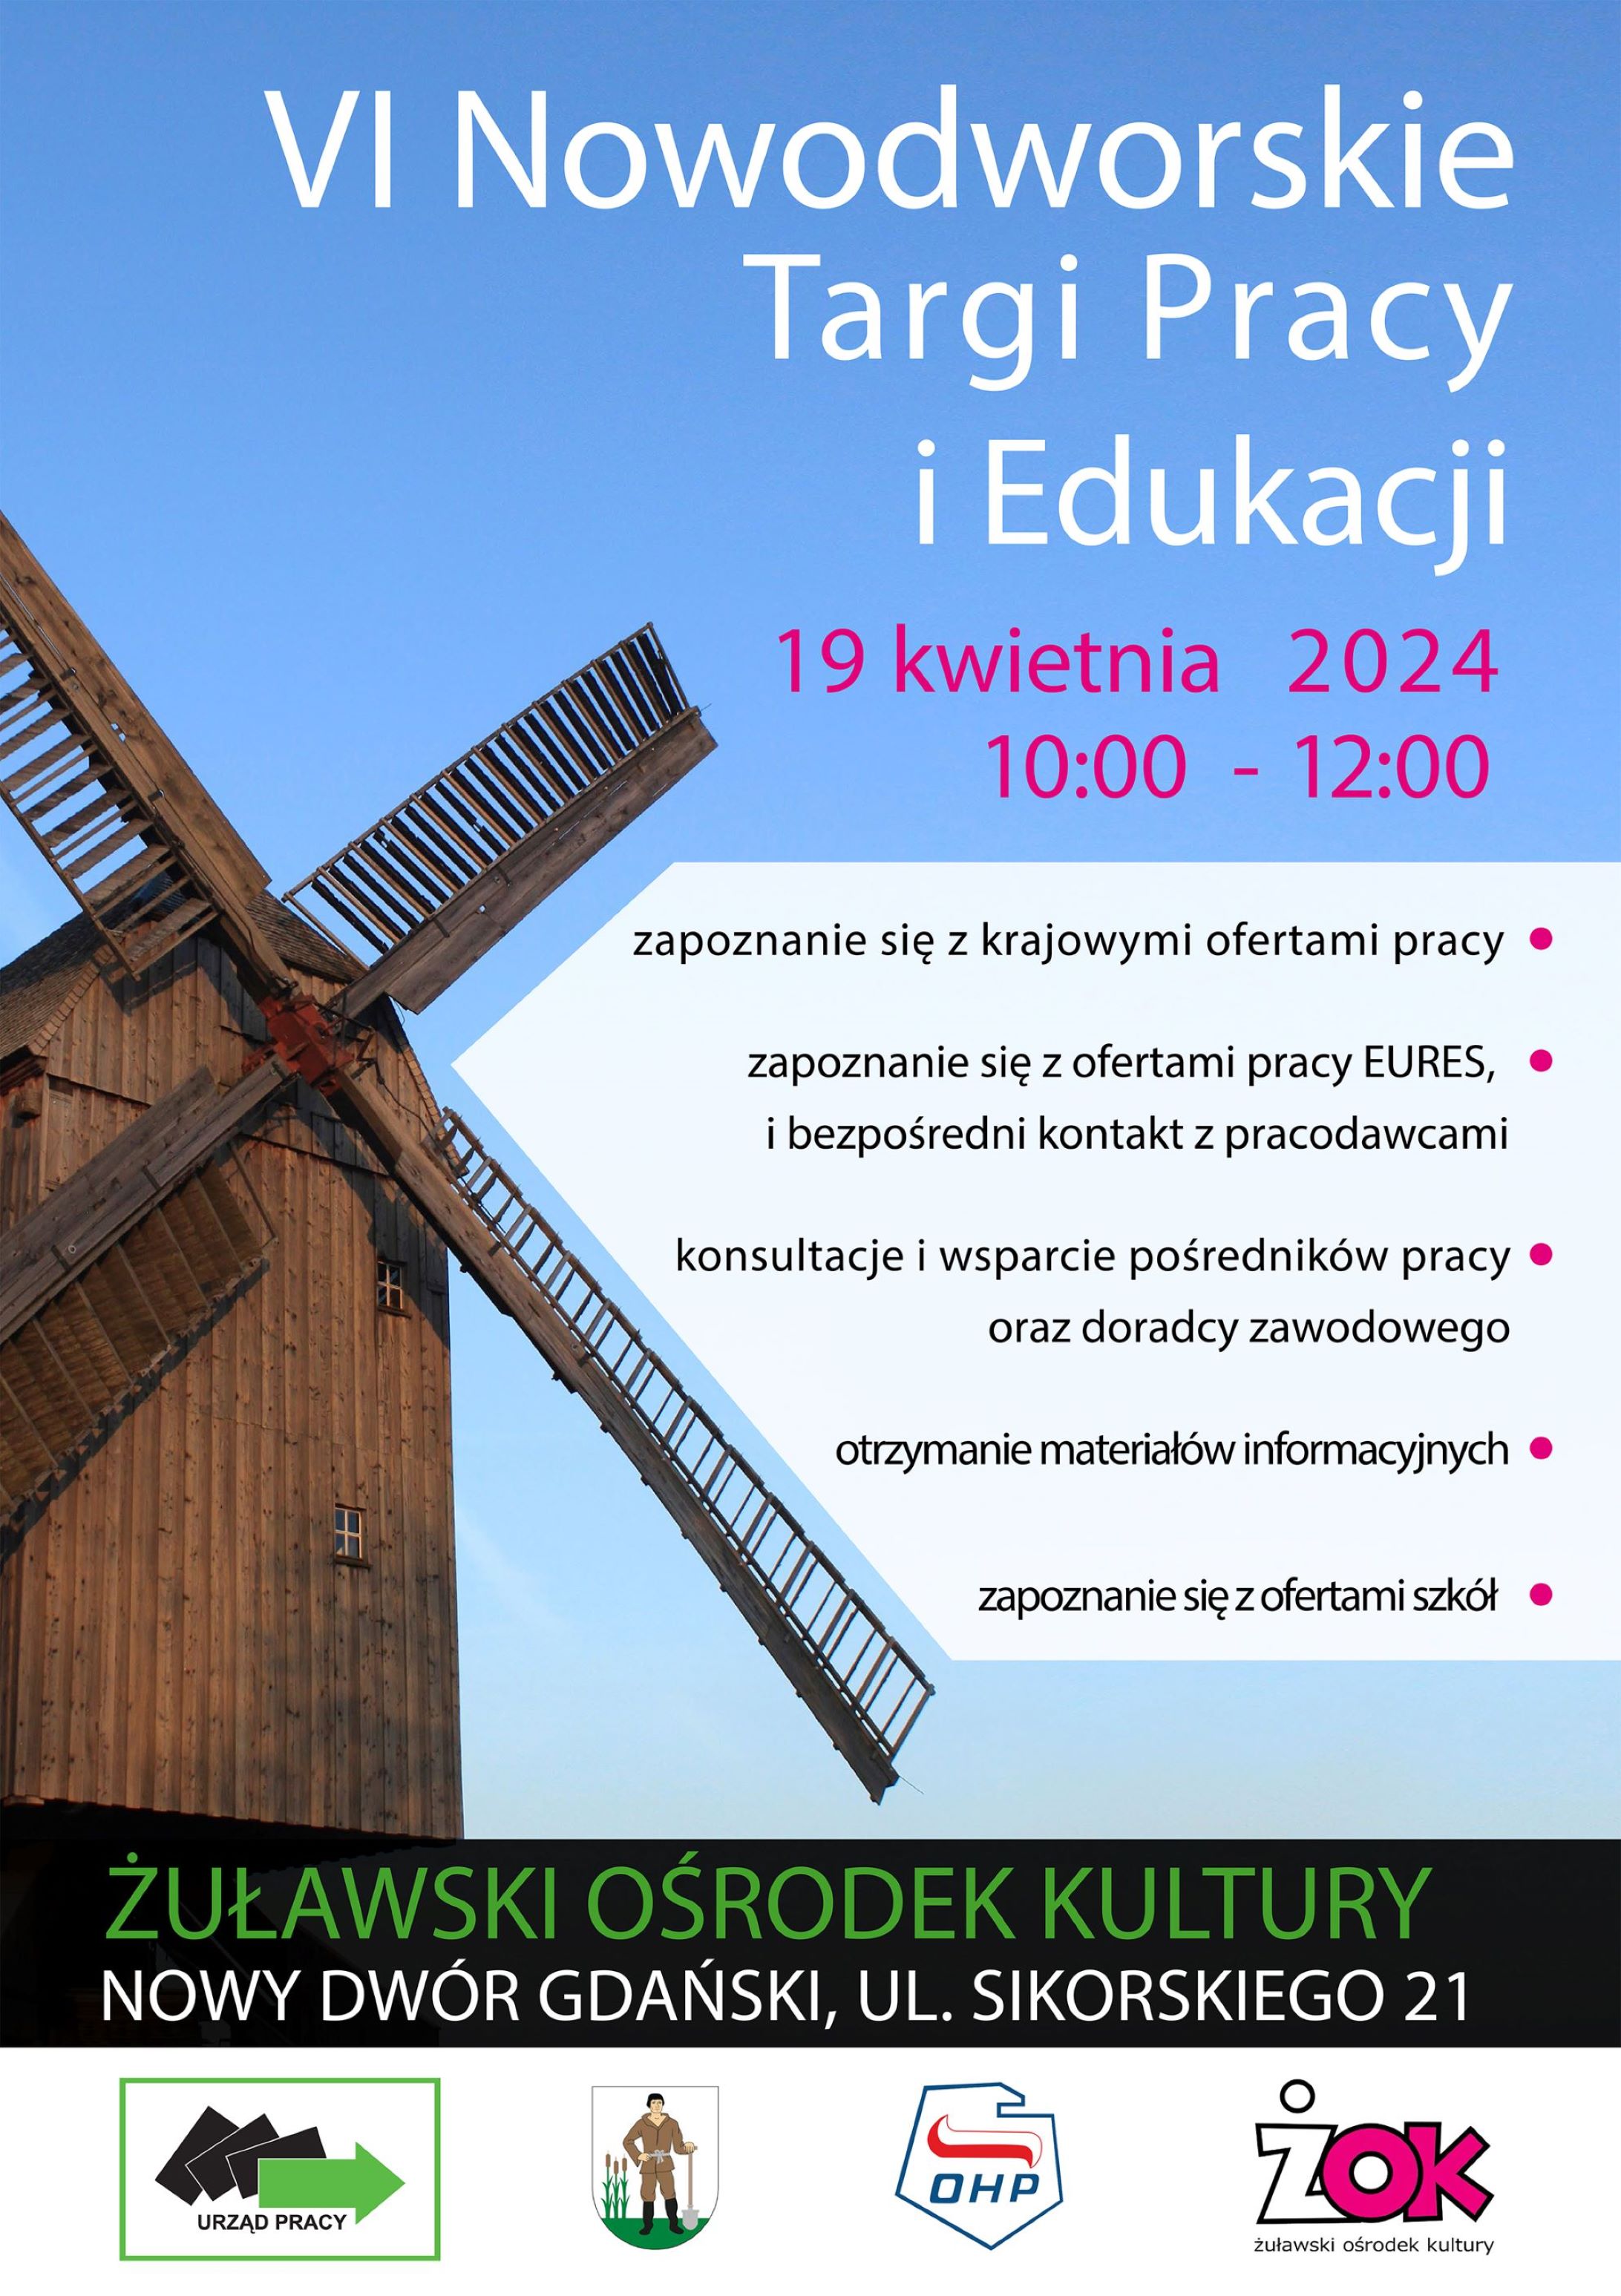 Plakat promujący targi pracy w Nowym Dworze Gdańskim w dniu 19 kwietnia br.